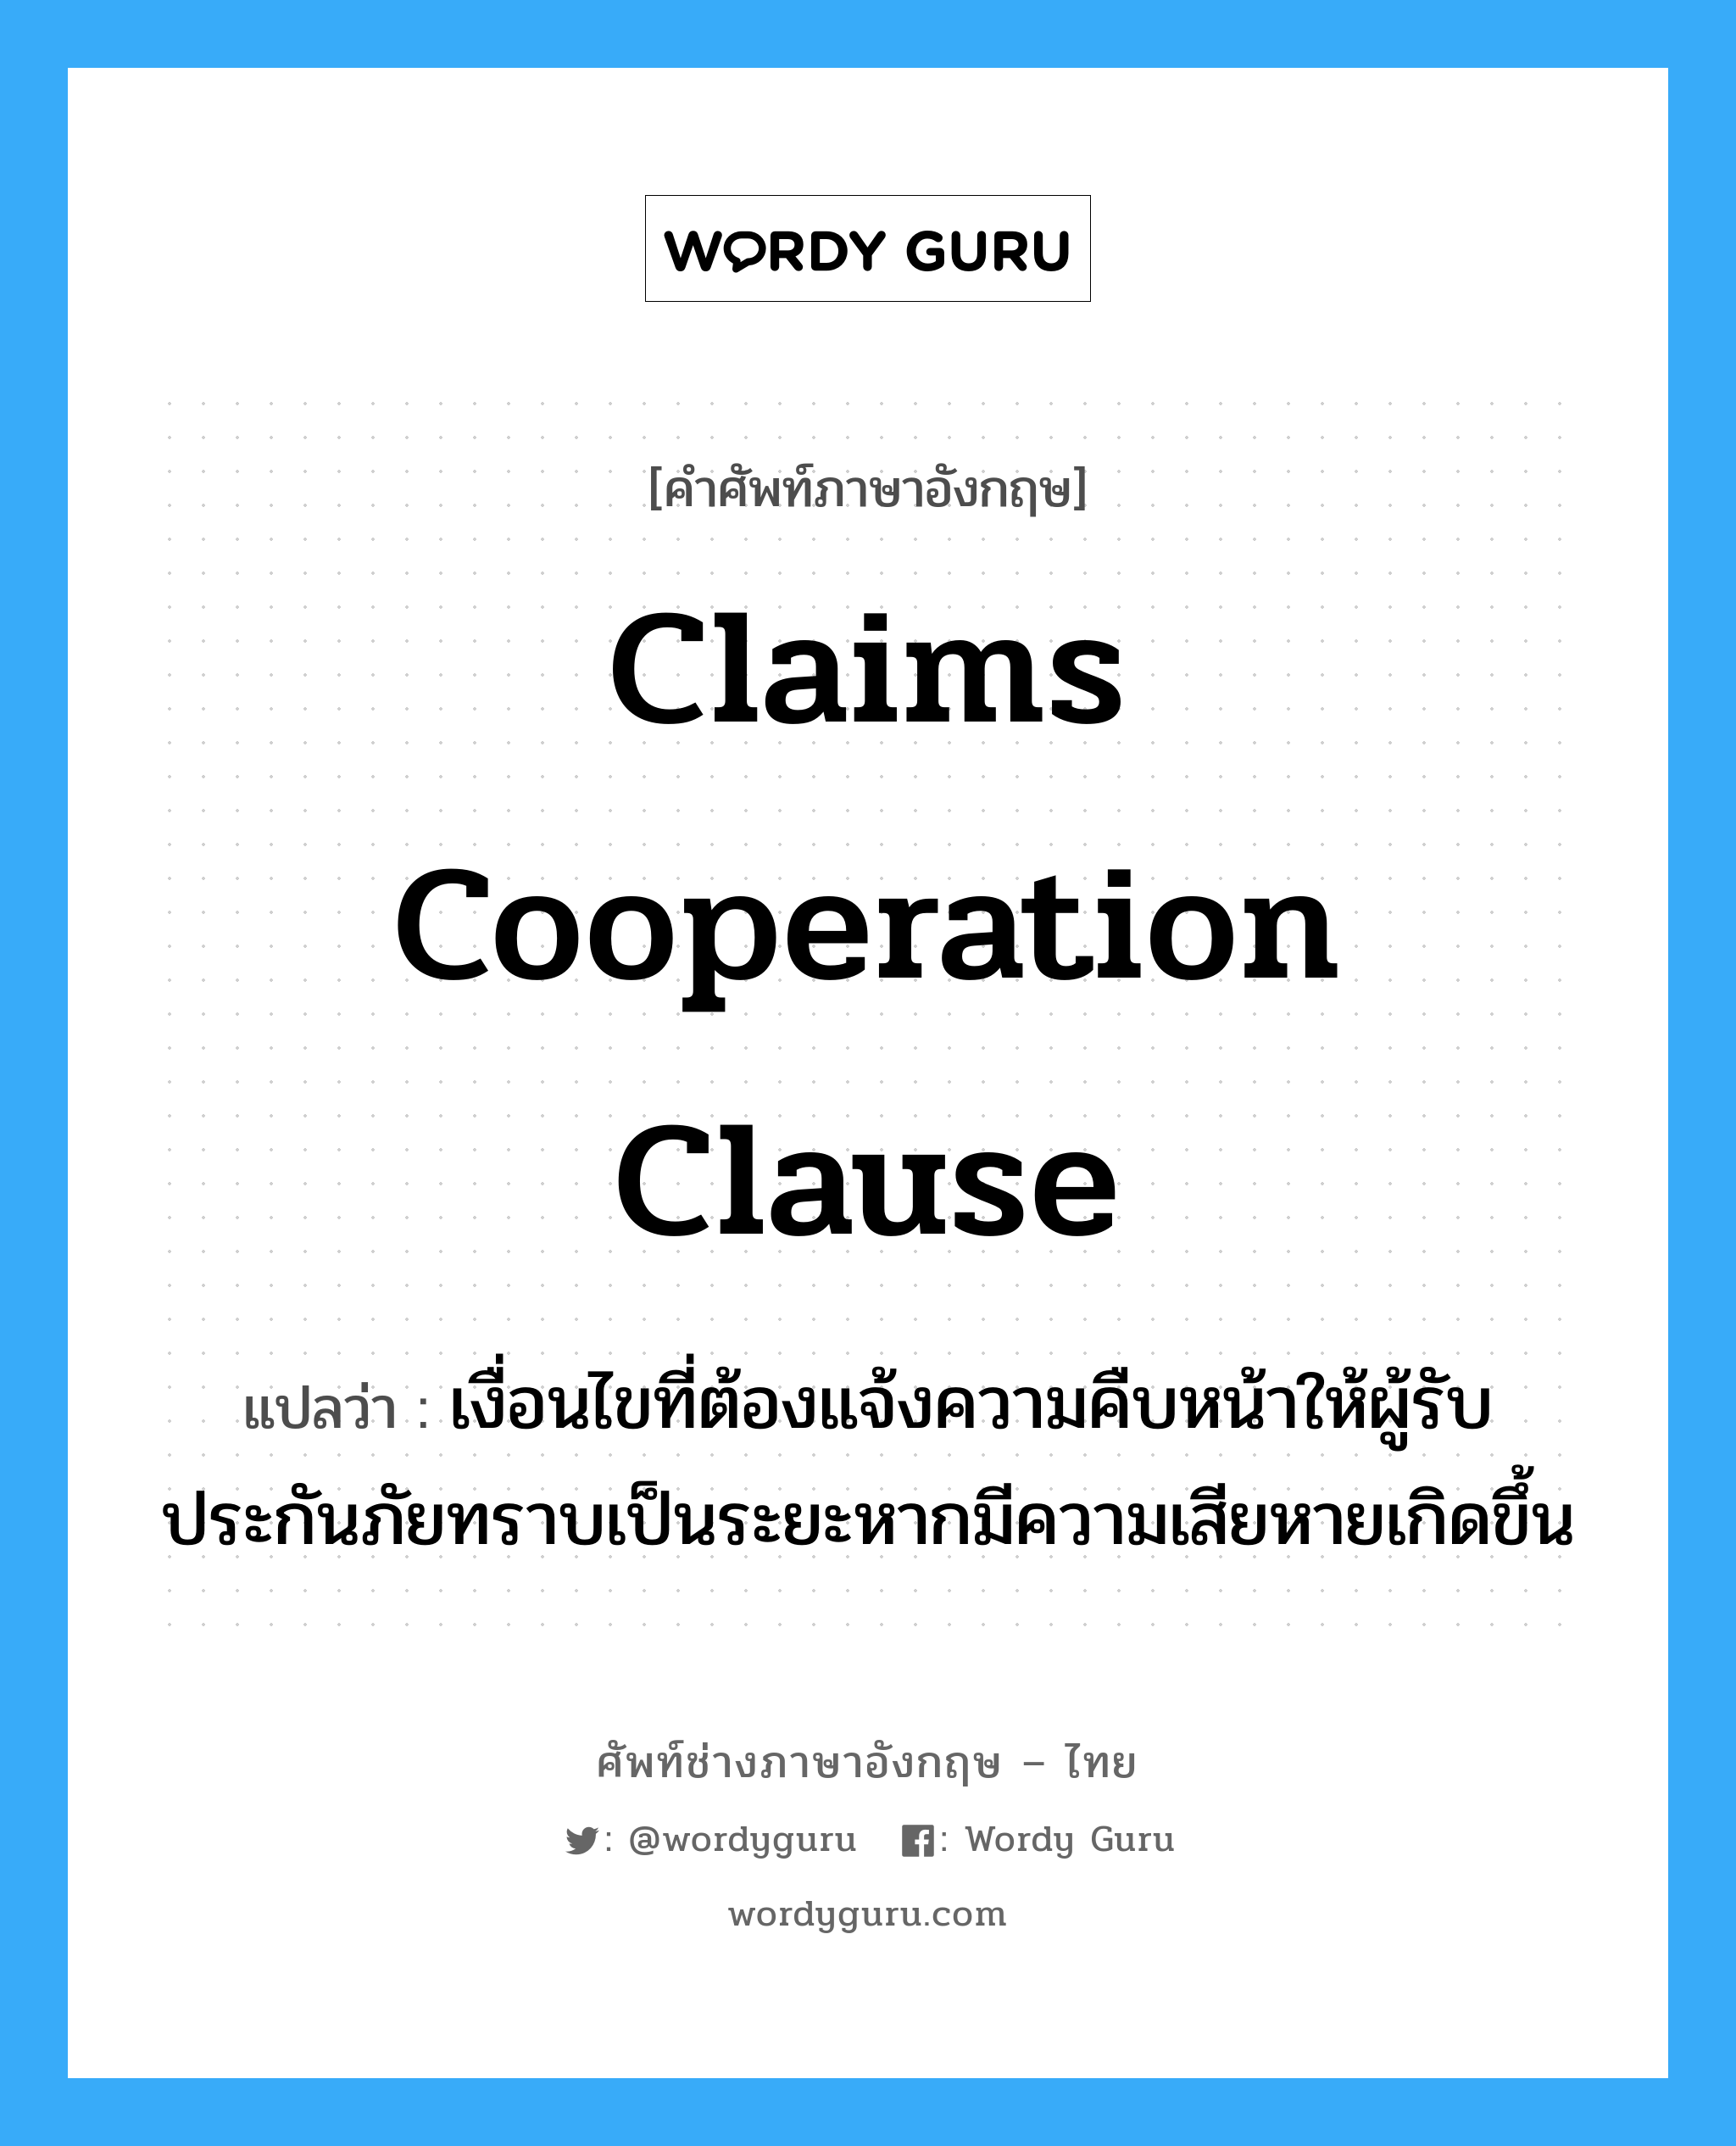 Claims Cooperation Clause แปลว่า?, คำศัพท์ช่างภาษาอังกฤษ - ไทย Claims Cooperation Clause คำศัพท์ภาษาอังกฤษ Claims Cooperation Clause แปลว่า เงื่อนไขที่ต้องแจ้งความคืบหน้าให้ผู้รับประกันภัยทราบเป็นระยะหากมีความเสียหายเกิดขึ้น